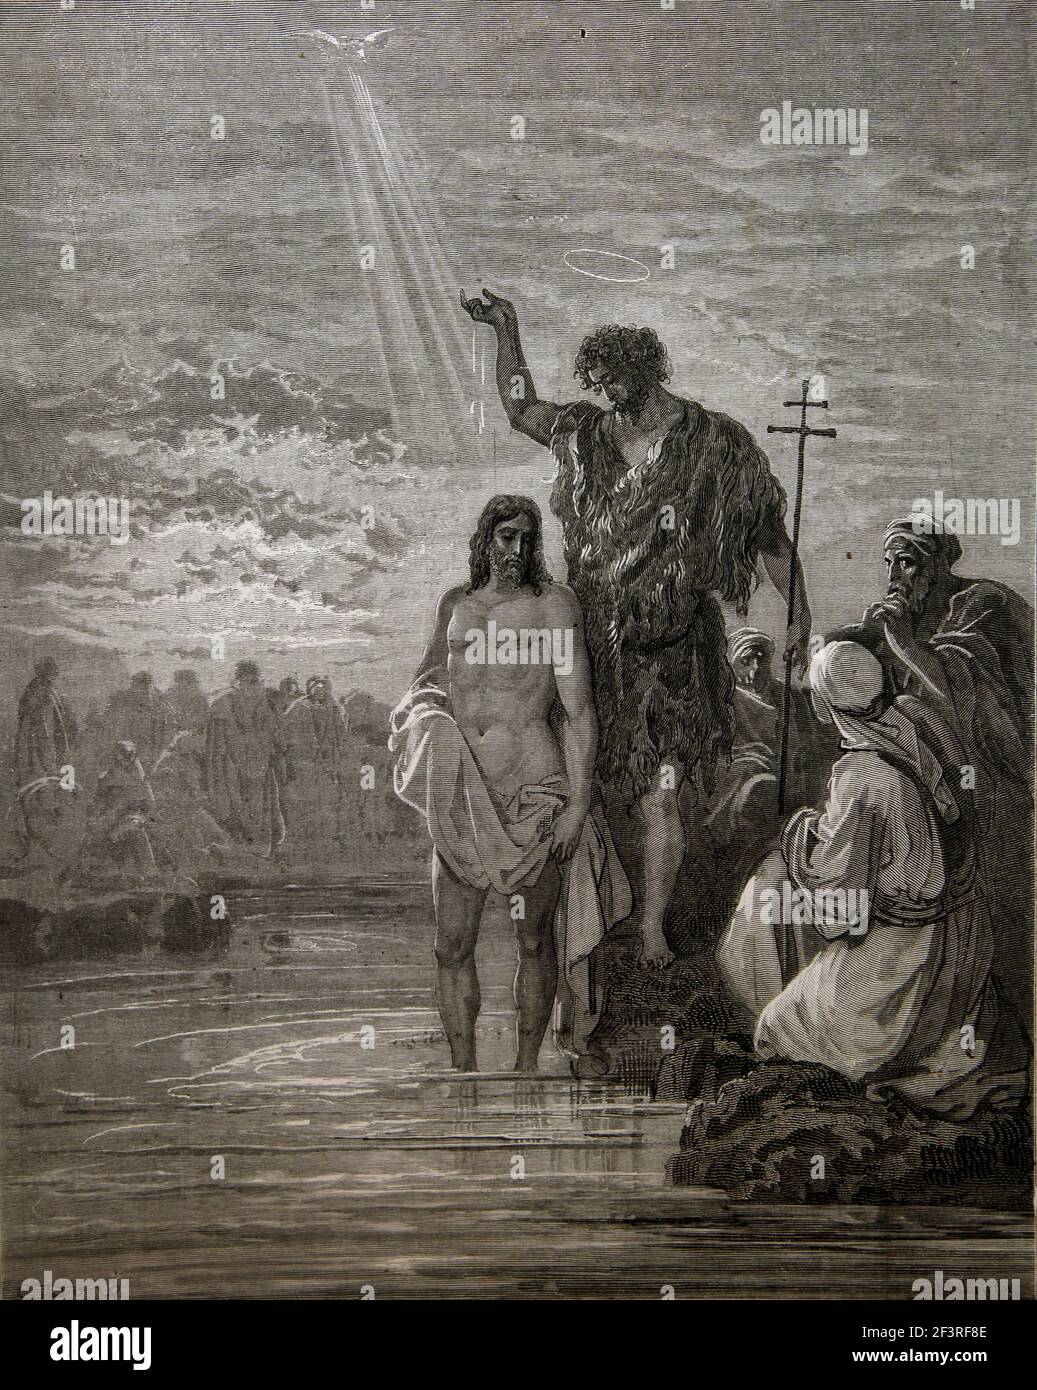 Historias Bíblicas - Ilustración de 'el Bautismo de Jesús' por Juan el Bautista del Nuevo Testamento Mark1:9-11 Foto de stock